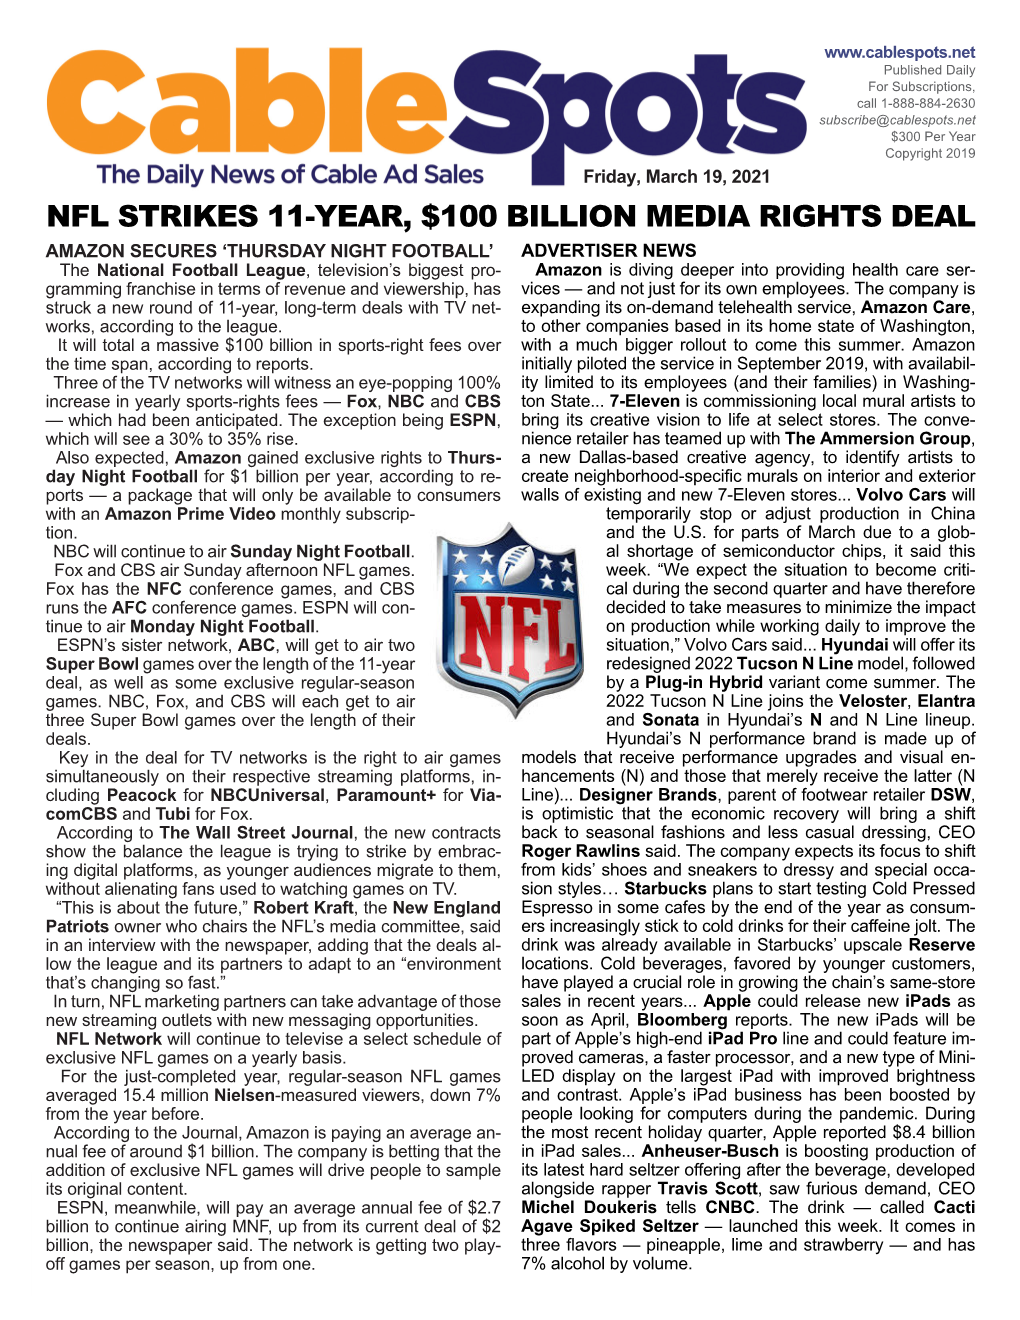 Nfl Strikes 11-Year, $100 Billion Media